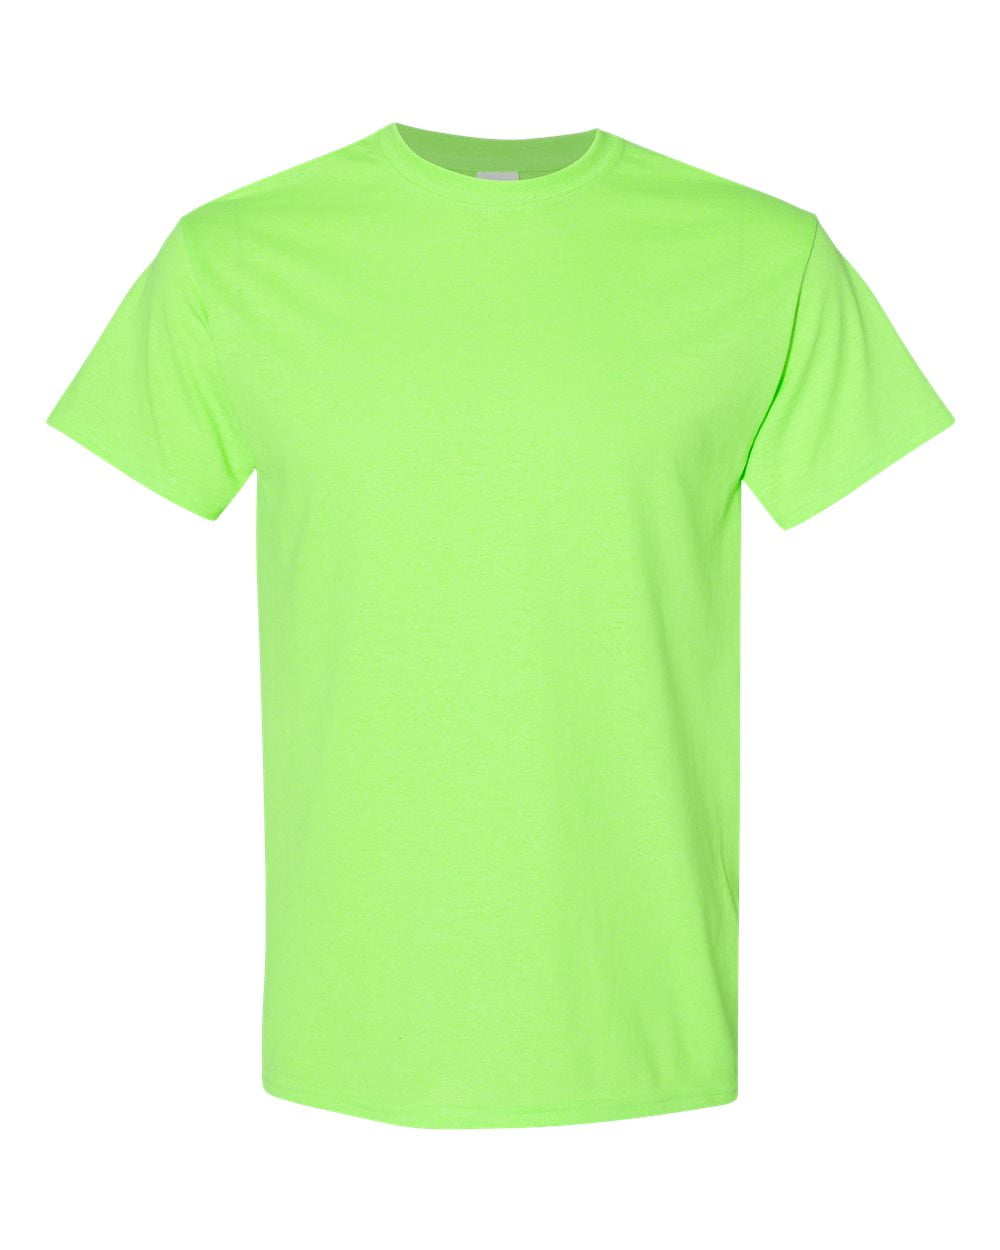 Men Heavy Cotton Multi Colors T-Shirt Color Neon Green Large Size ...